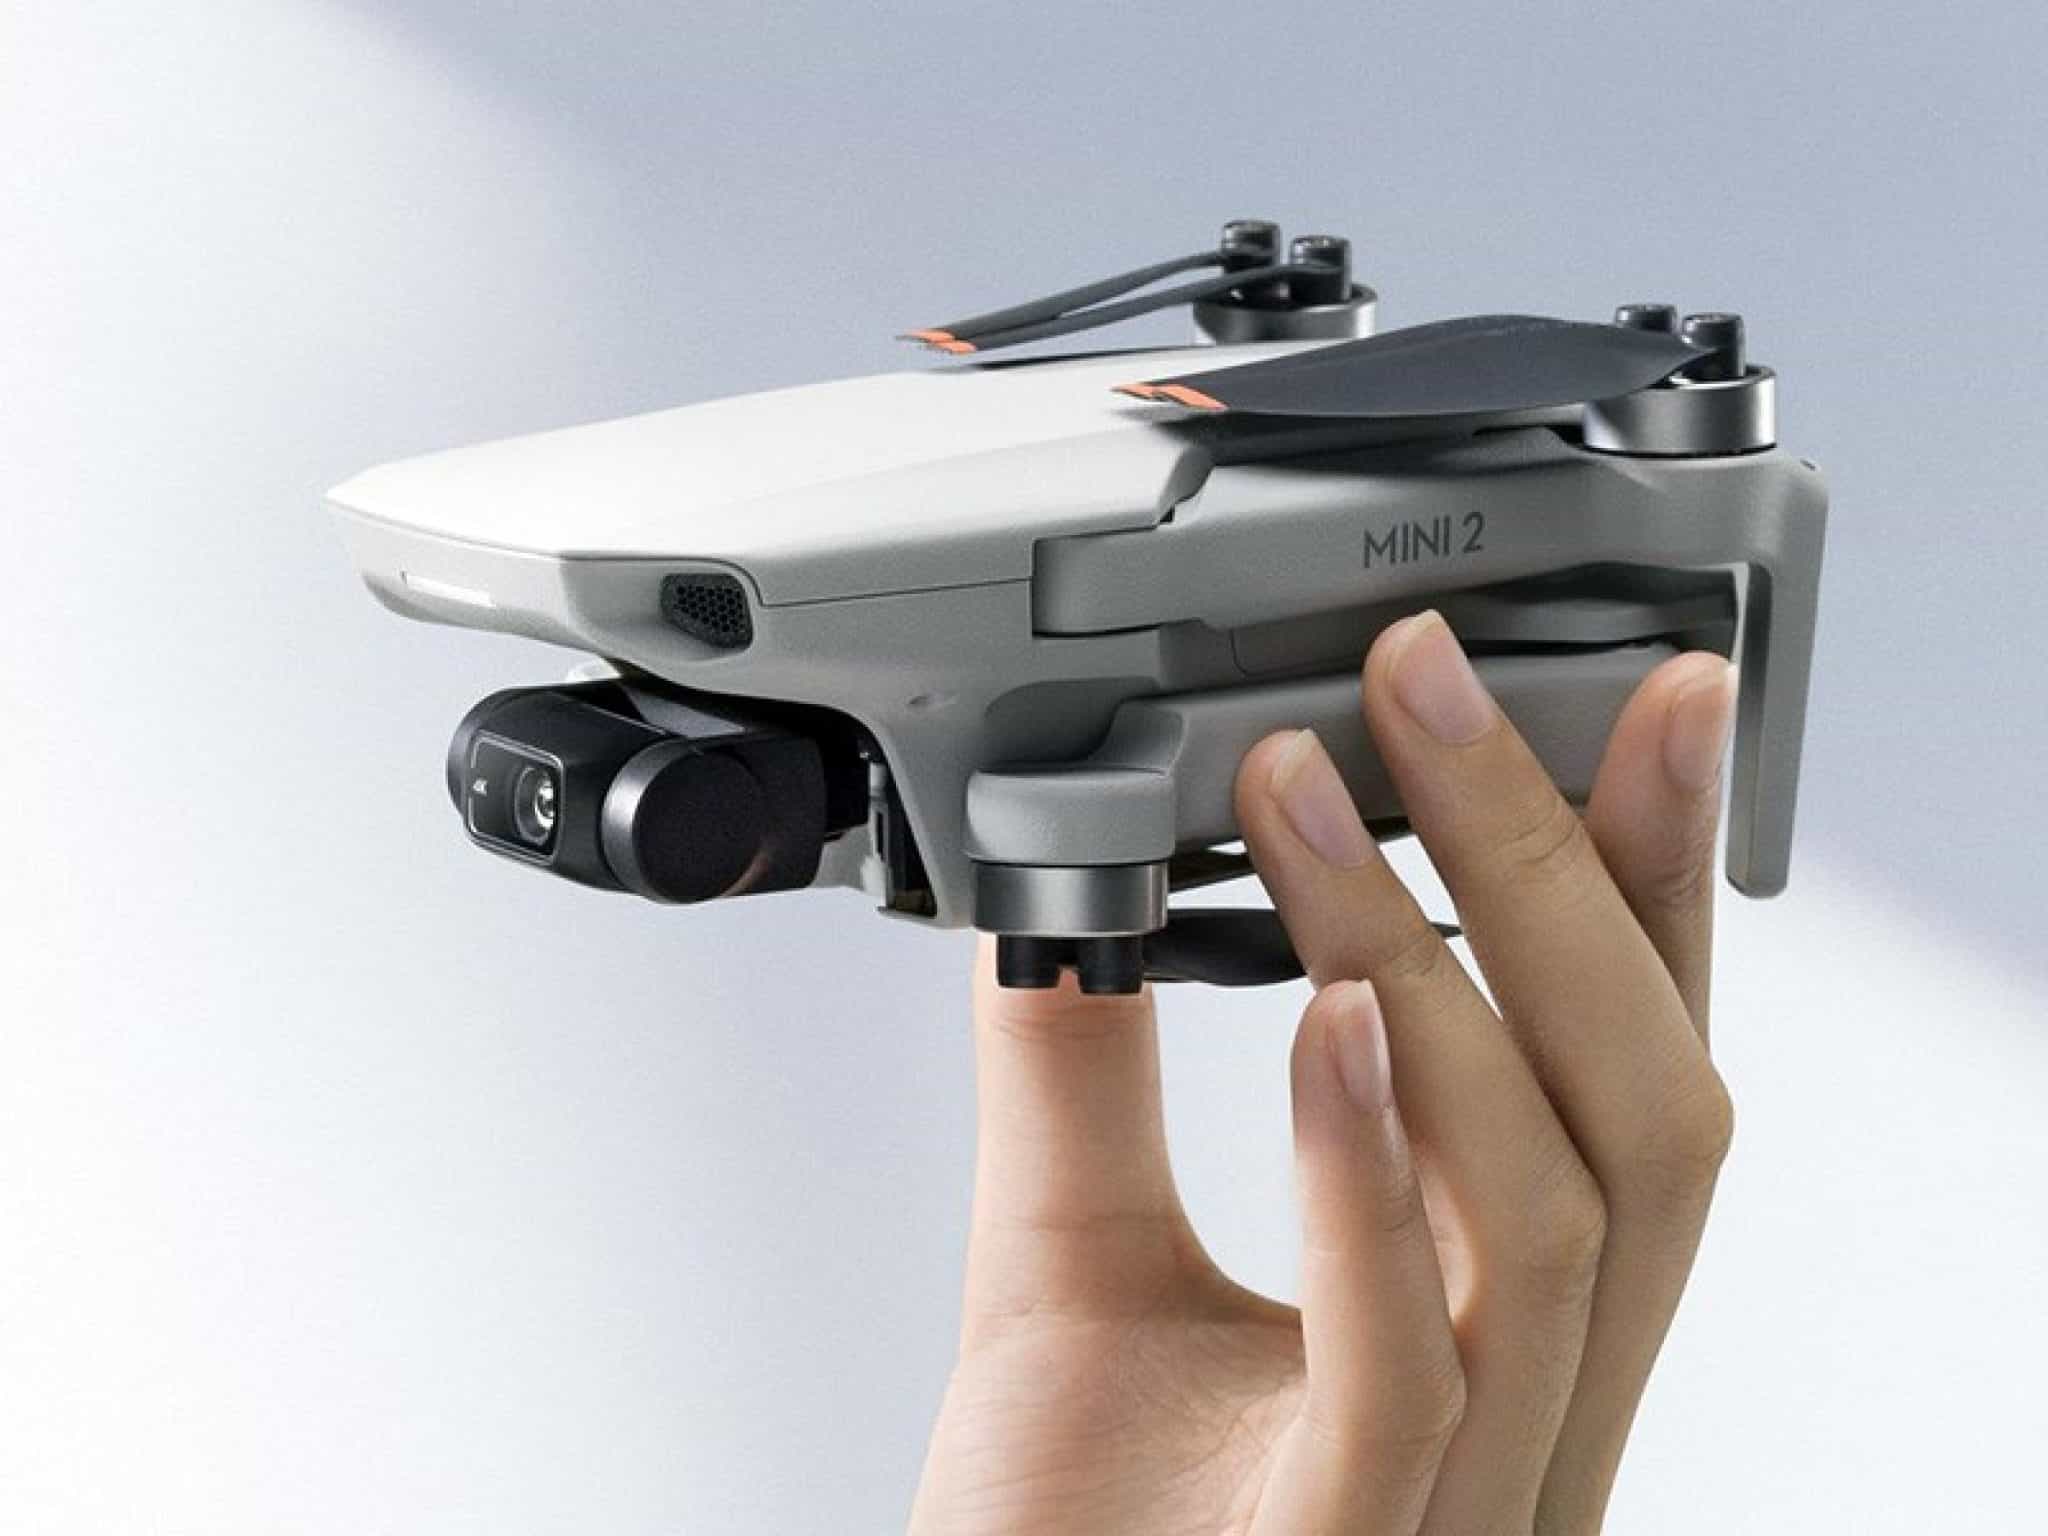 Mini 2 DJI | Características, opiniones y precio » Drones Baratos Ya!